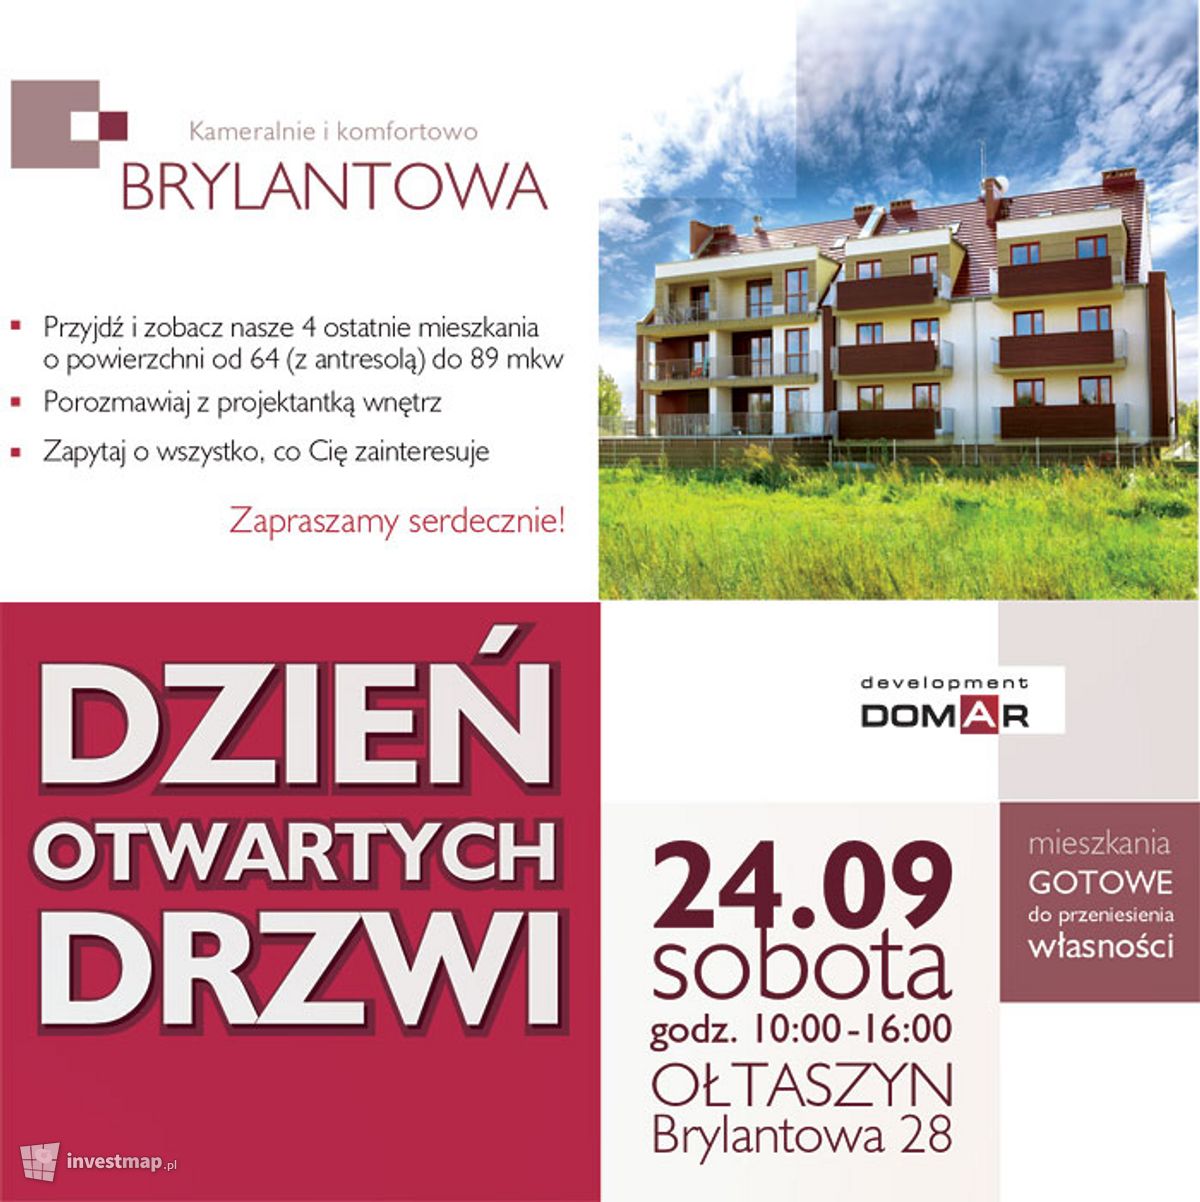 Wizualizacja [Wrocław] Willa miejska "Brylantowa" dodał Jan Augustynowski